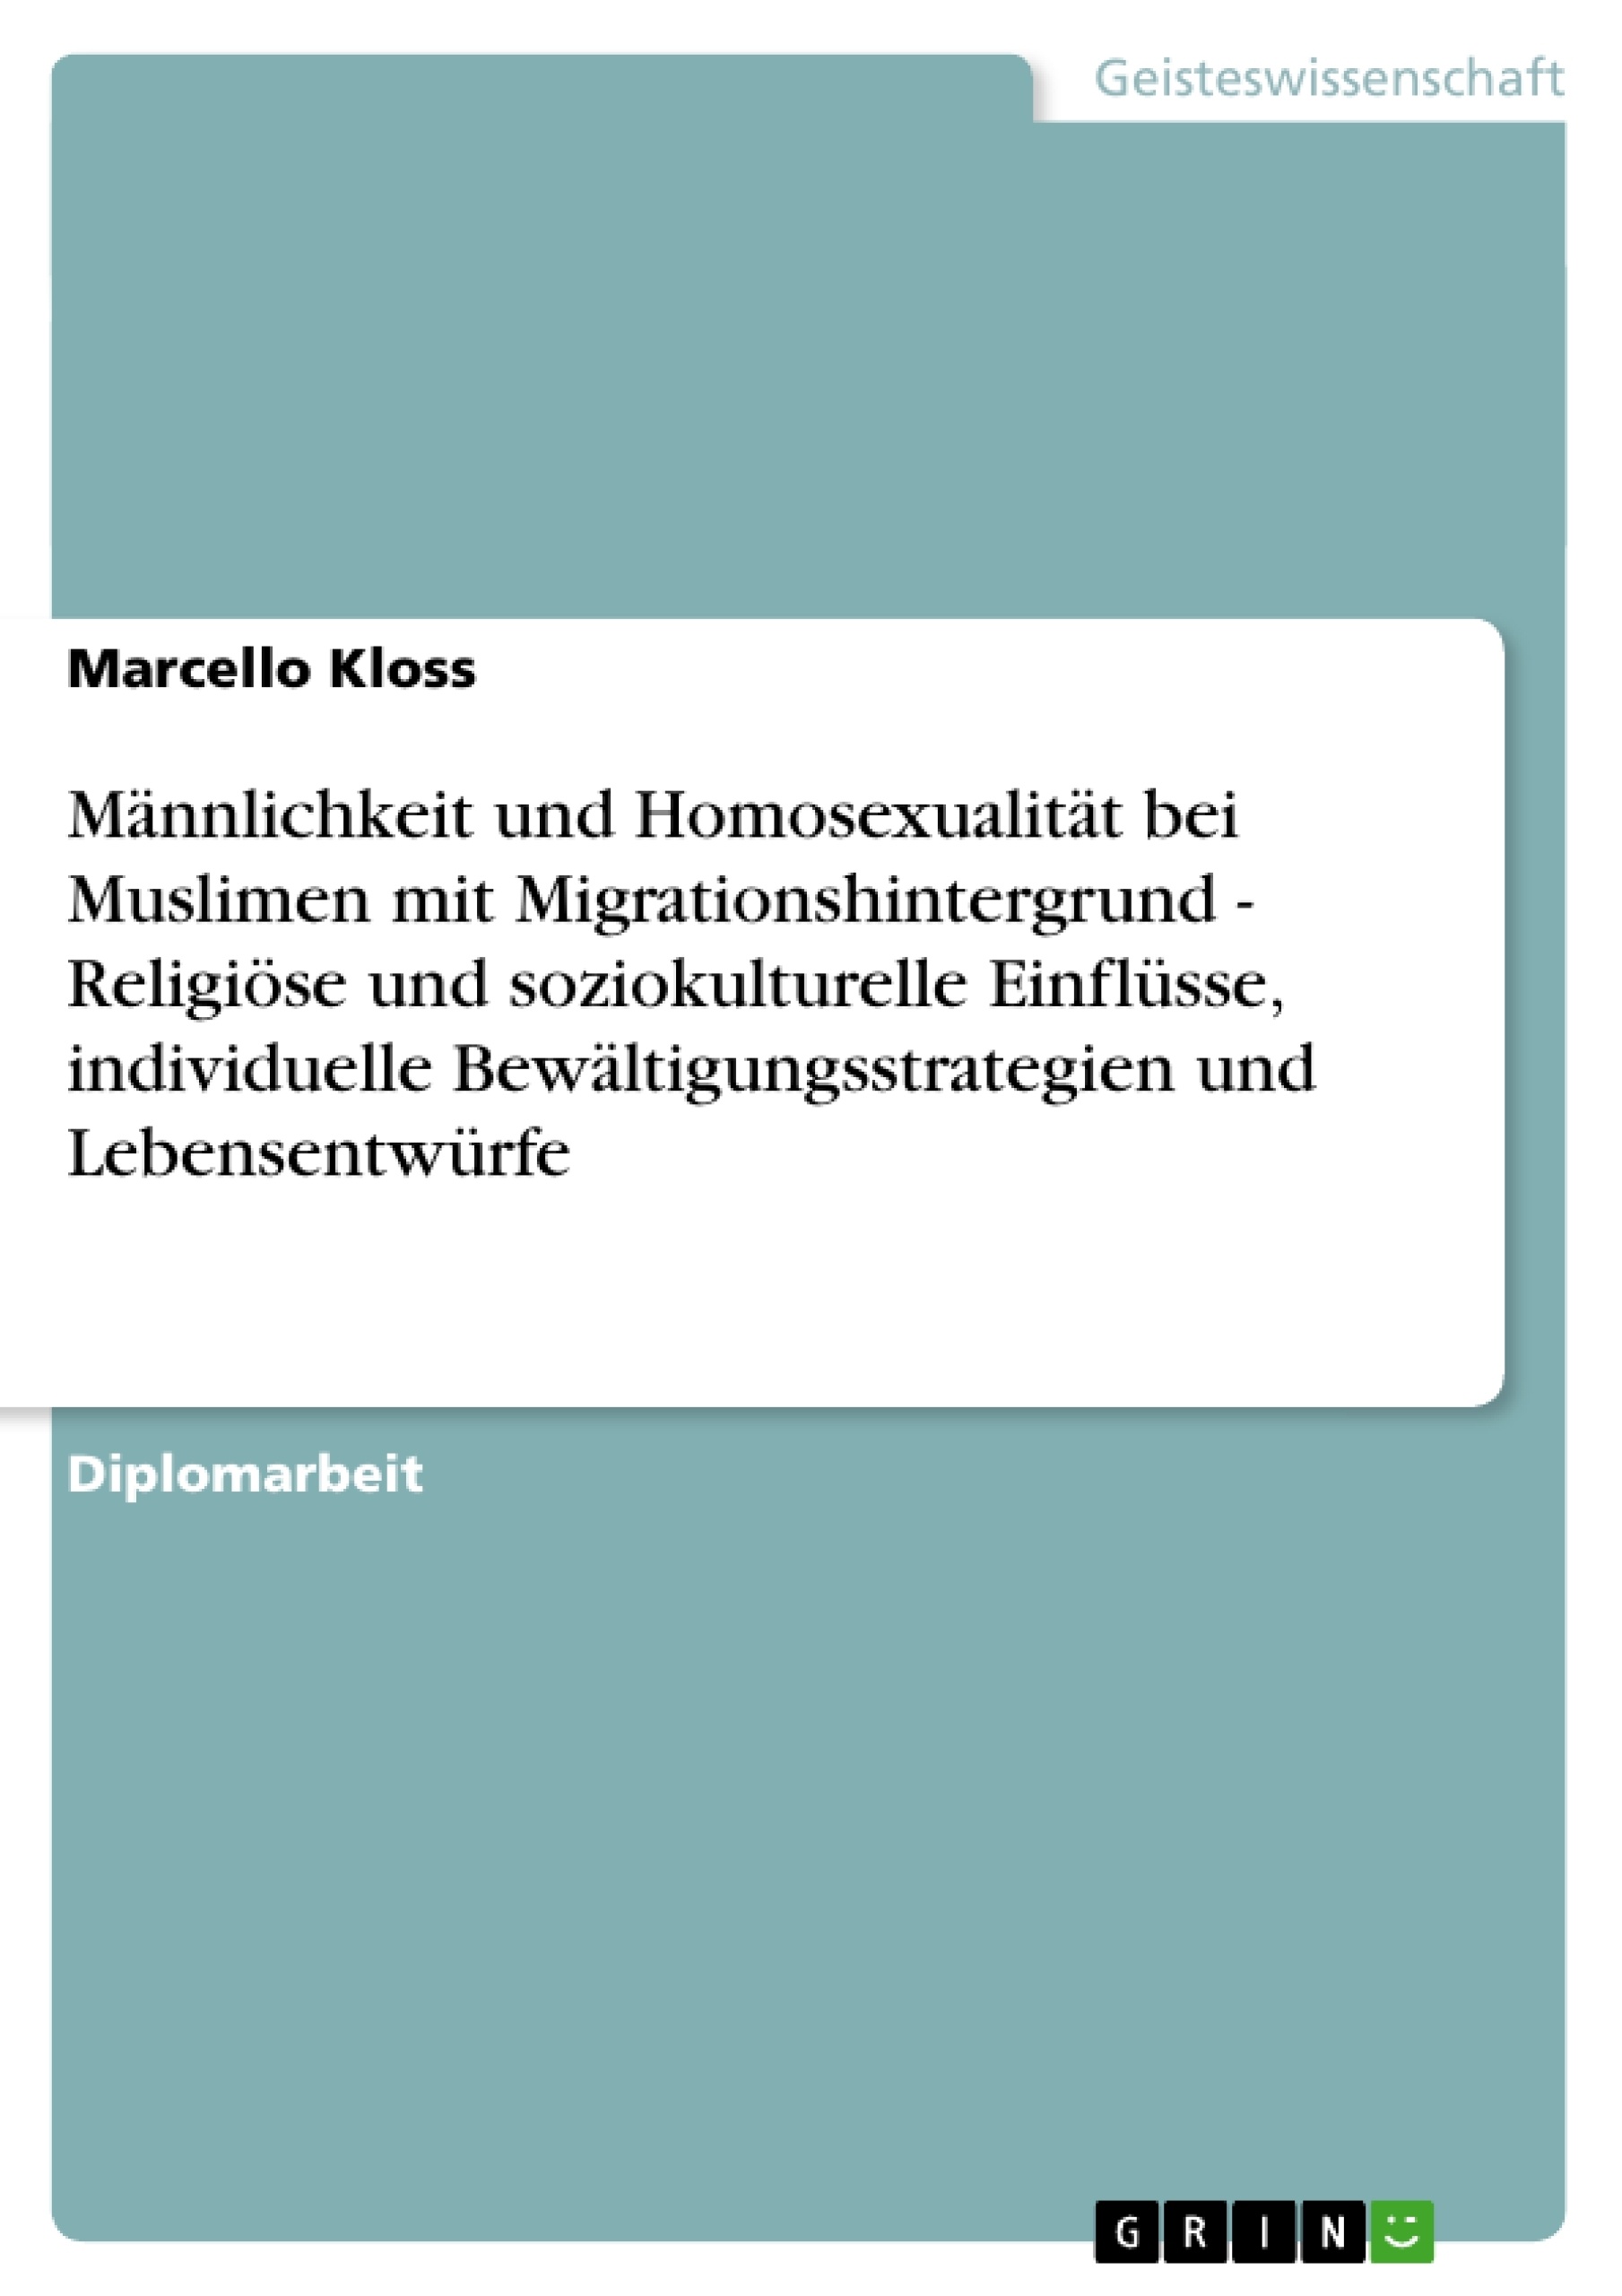 Title: Männlichkeit und Homosexualität bei Muslimen mit Migrationshintergrund - Religiöse und soziokulturelle Einflüsse, individuelle Bewältigungsstrategien und Lebensentwürfe